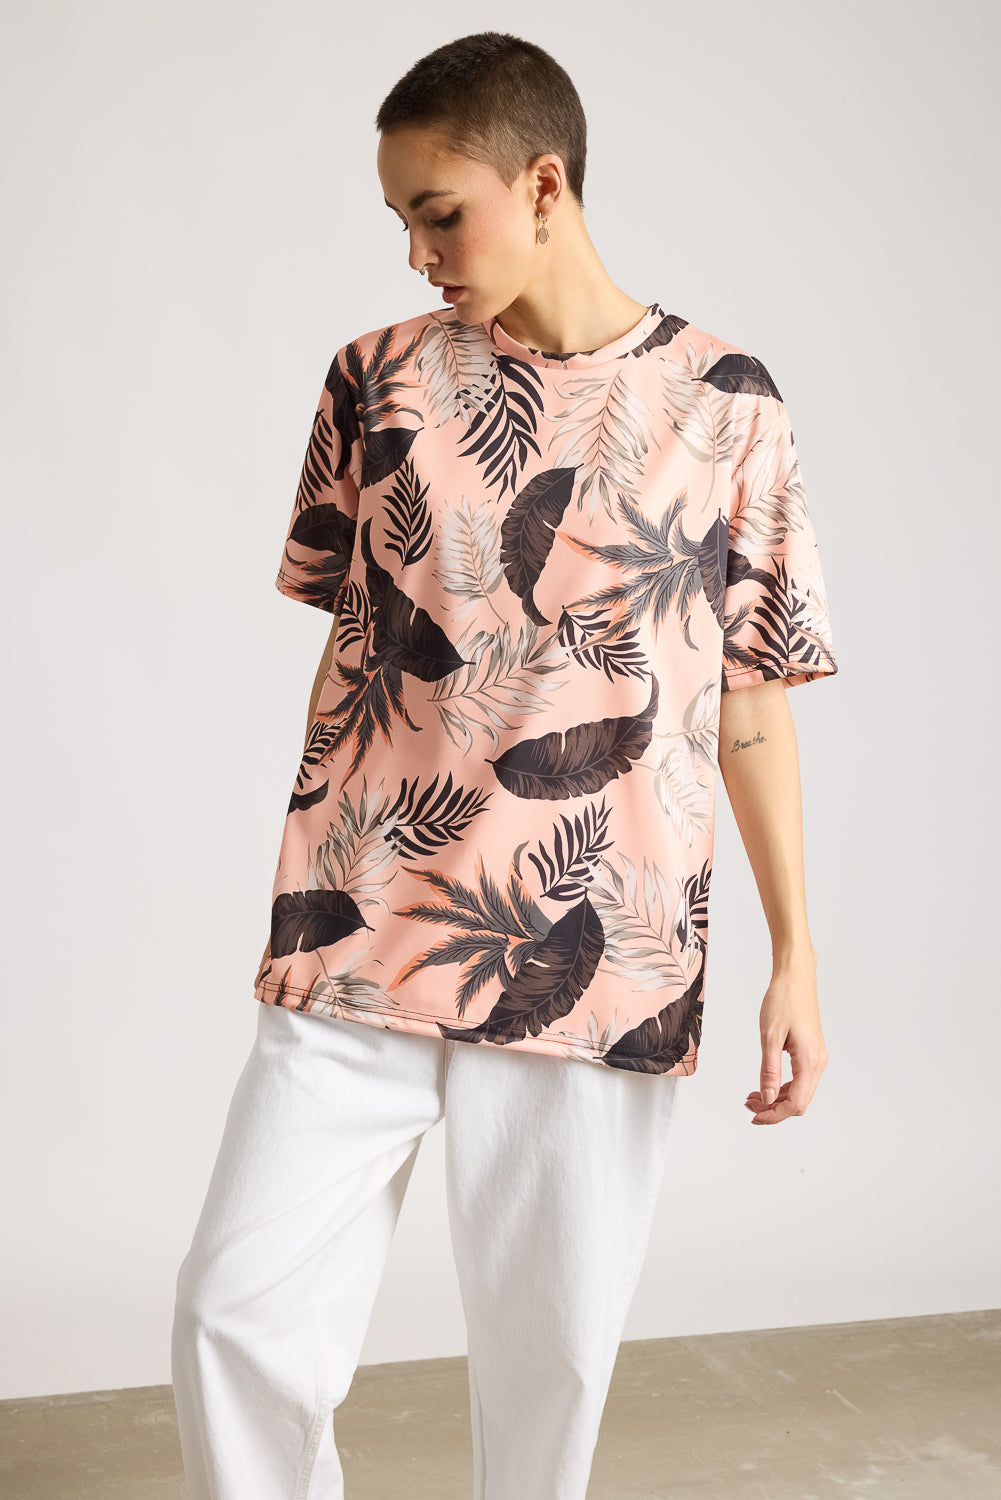 AOP Women's T-shirt - Tropical Blaze